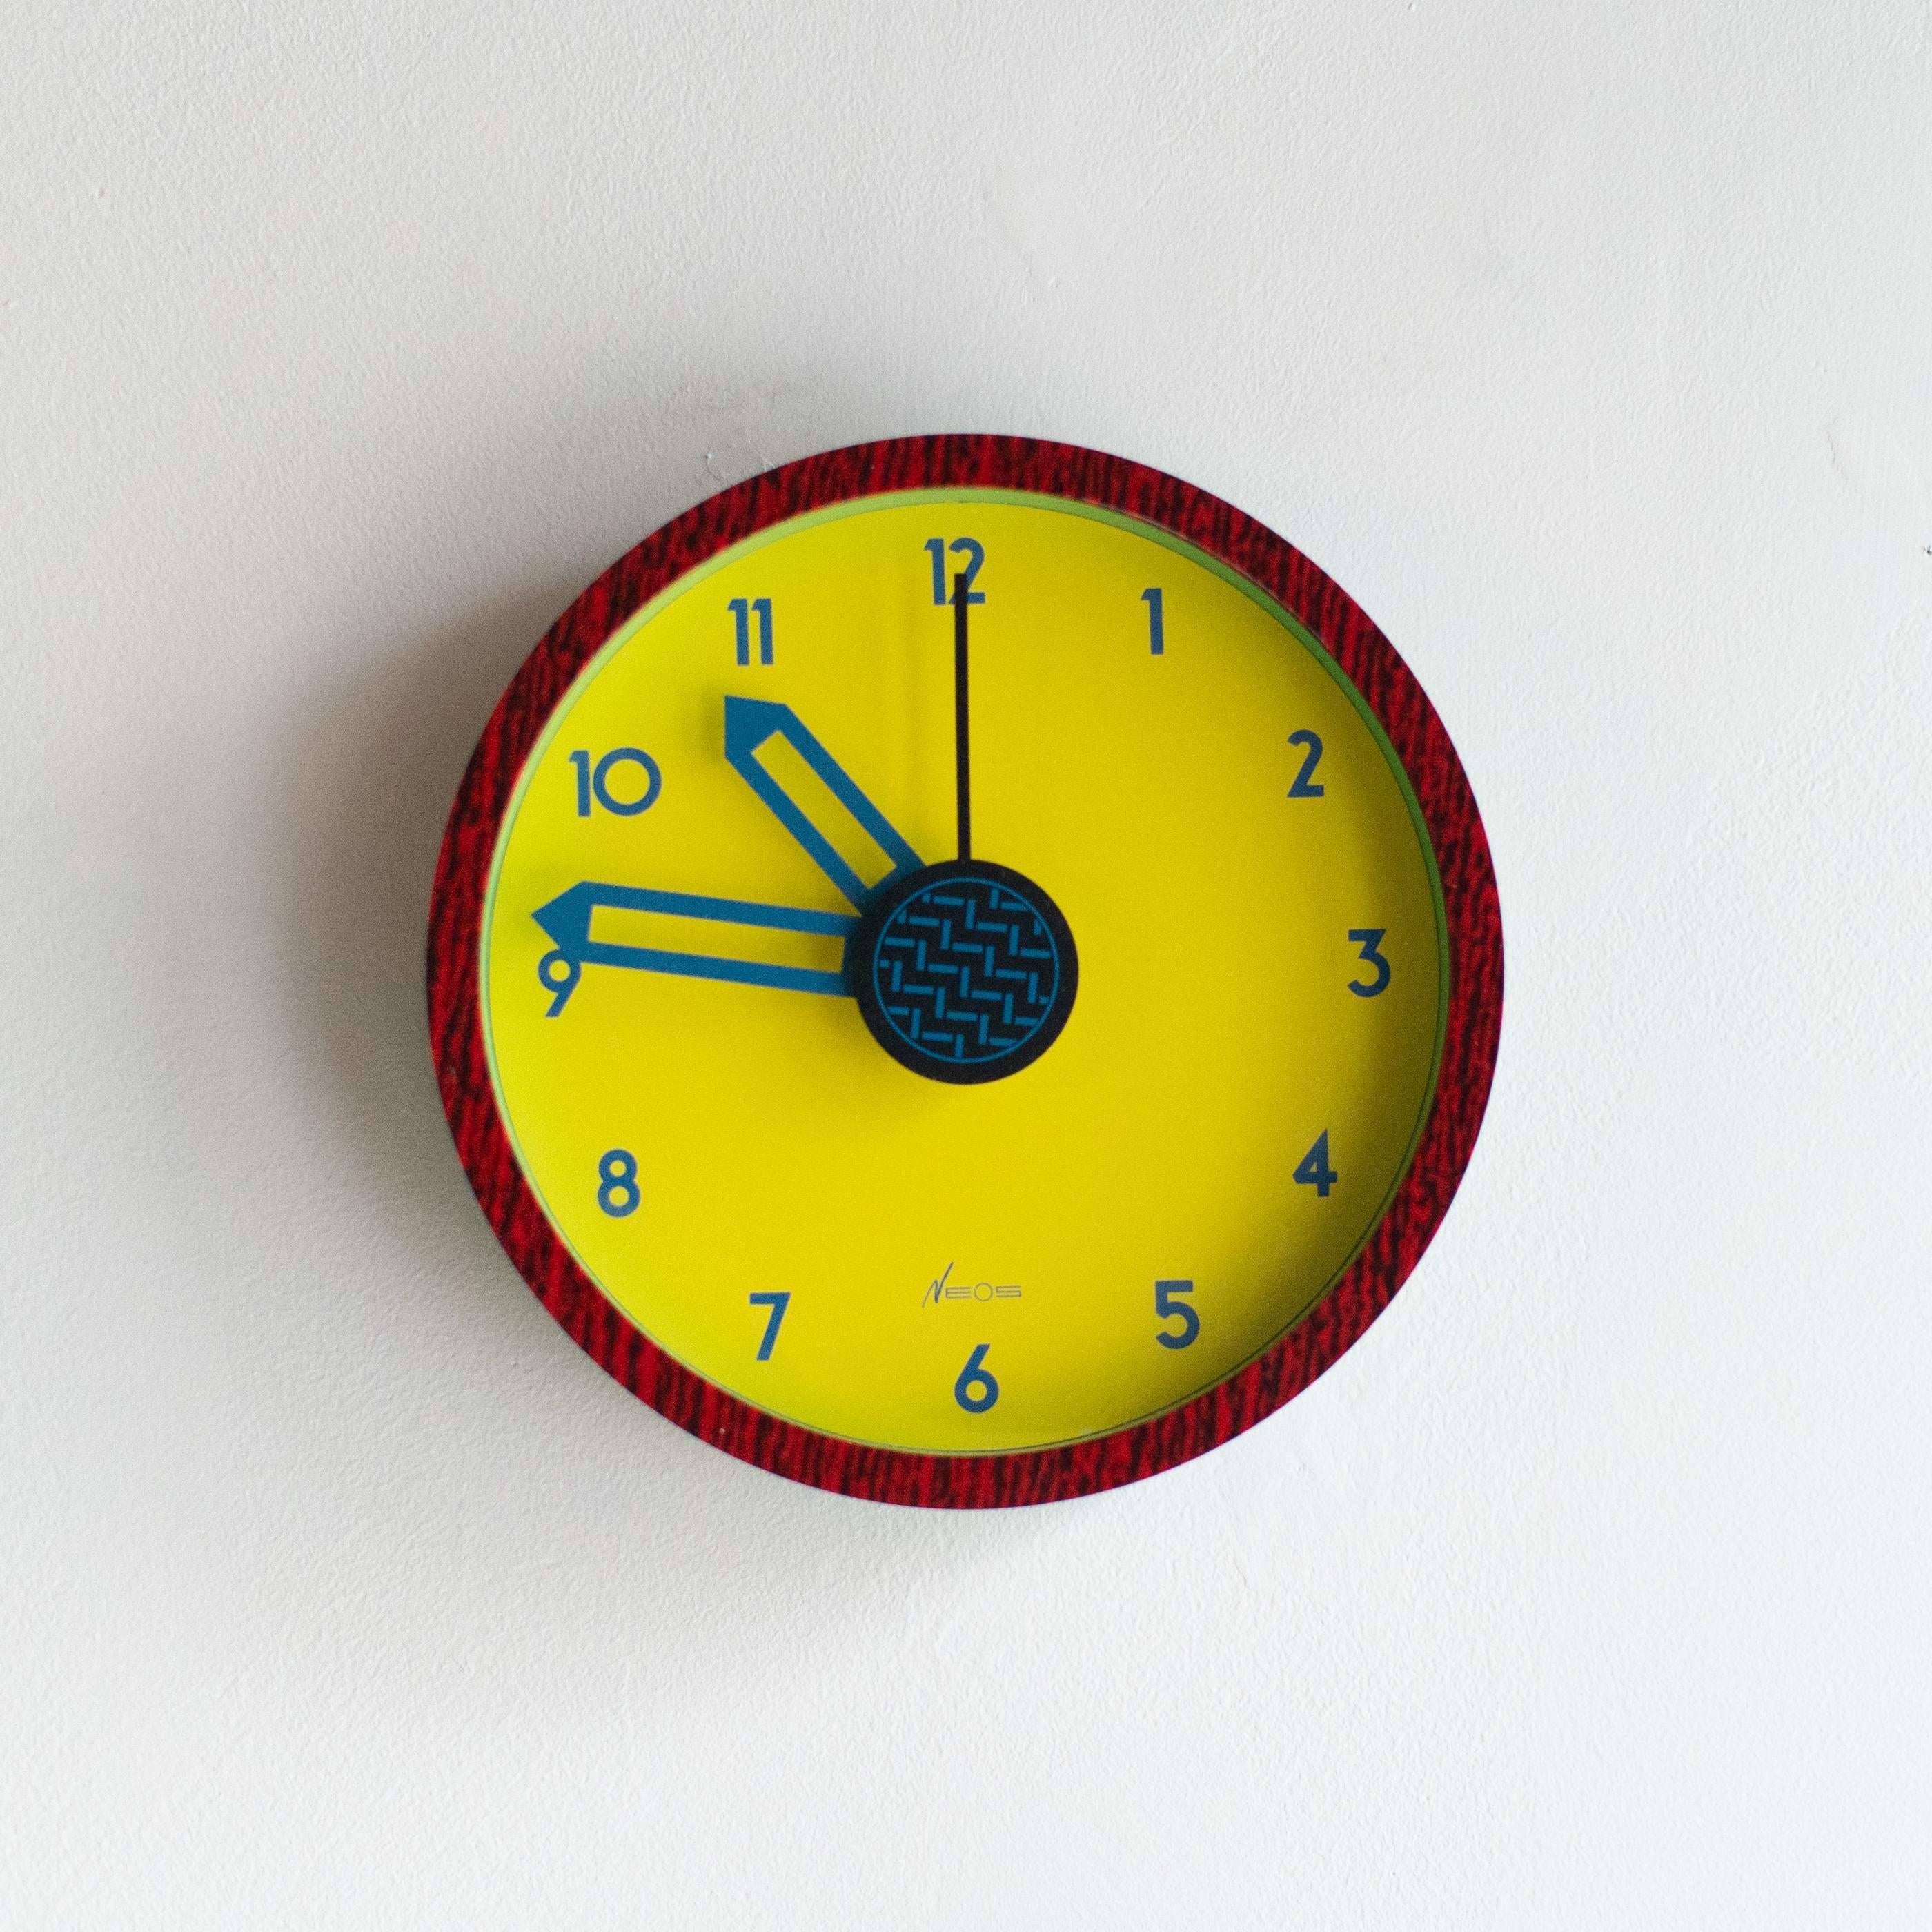 Die Uhr Neos wurde in den 80er Jahren von George Sowden und Nathalie du Pasquier entworfen. Neos ist die Marke des italienischen Uhrenherstellers Lorenz. Sie haben in den 80er Jahren viele Uhren für diese Firma entworfen. 
Die Uhren sind alle im